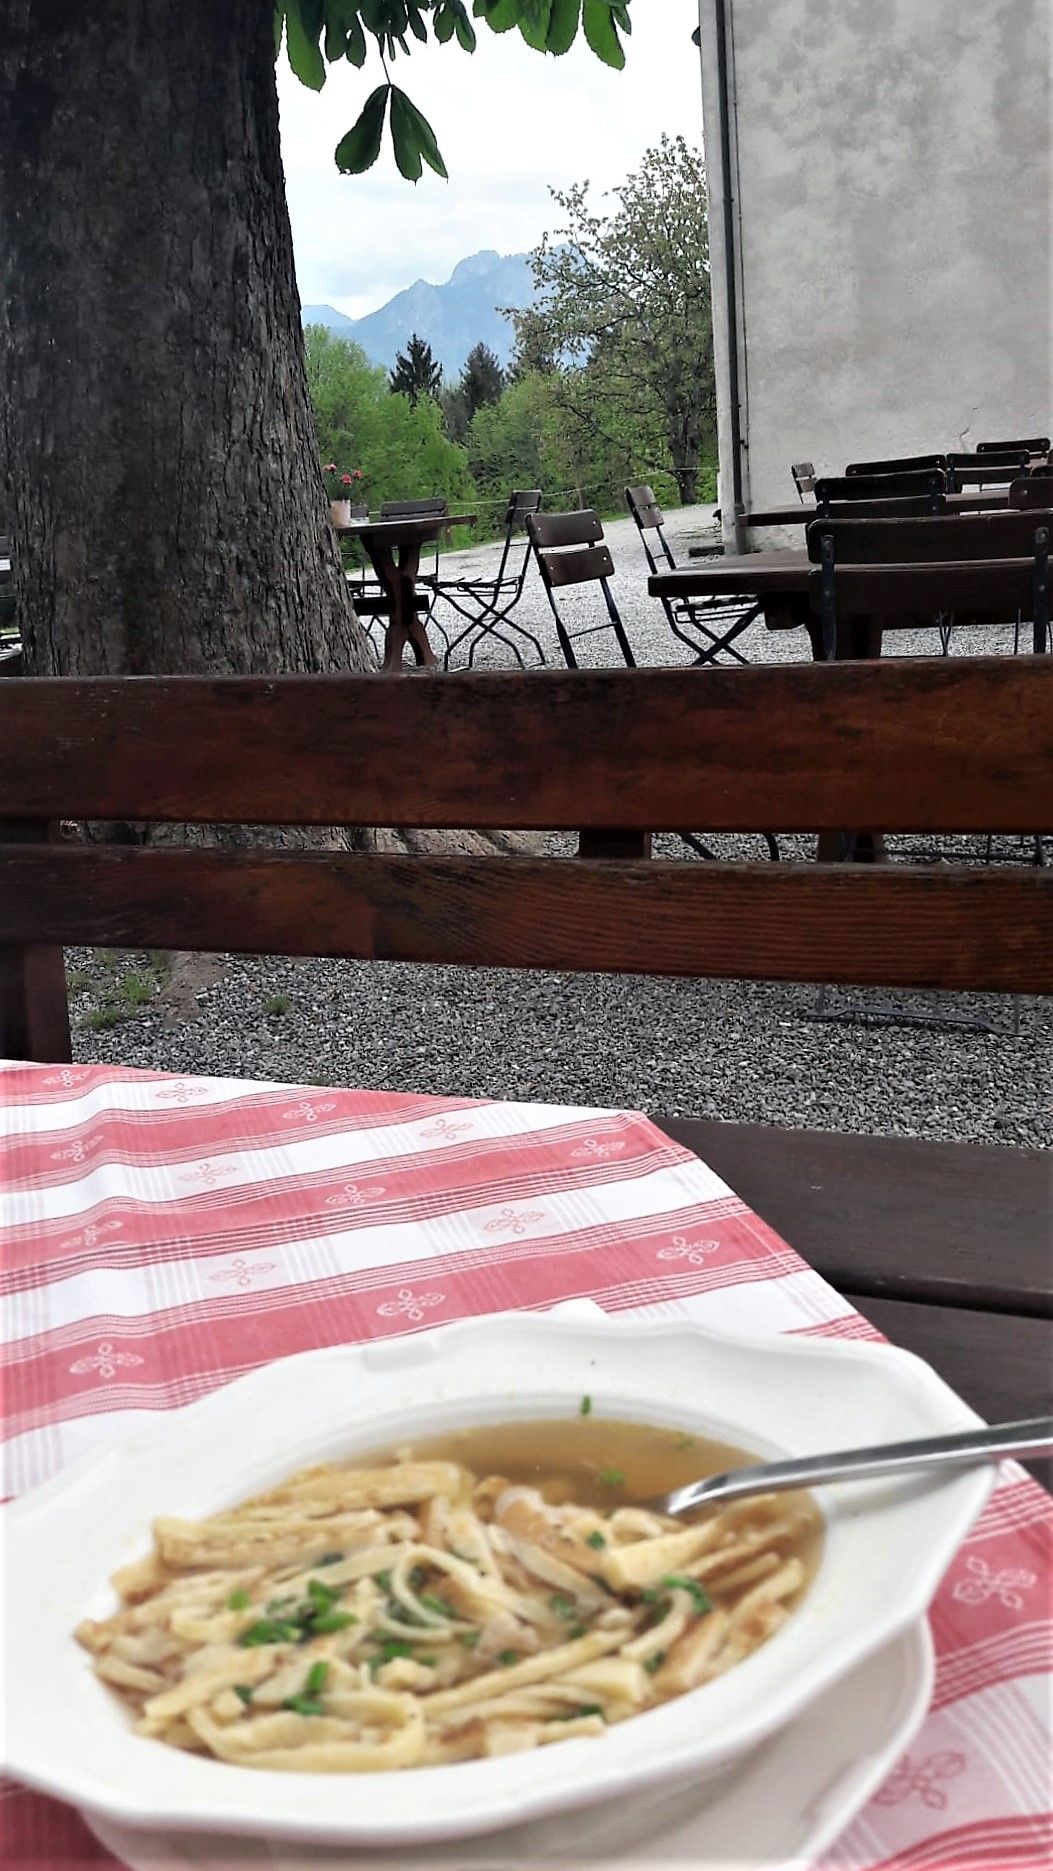 Pfannenkuchensuppe auf Tisch - dahinter Blick in die Bergwelt